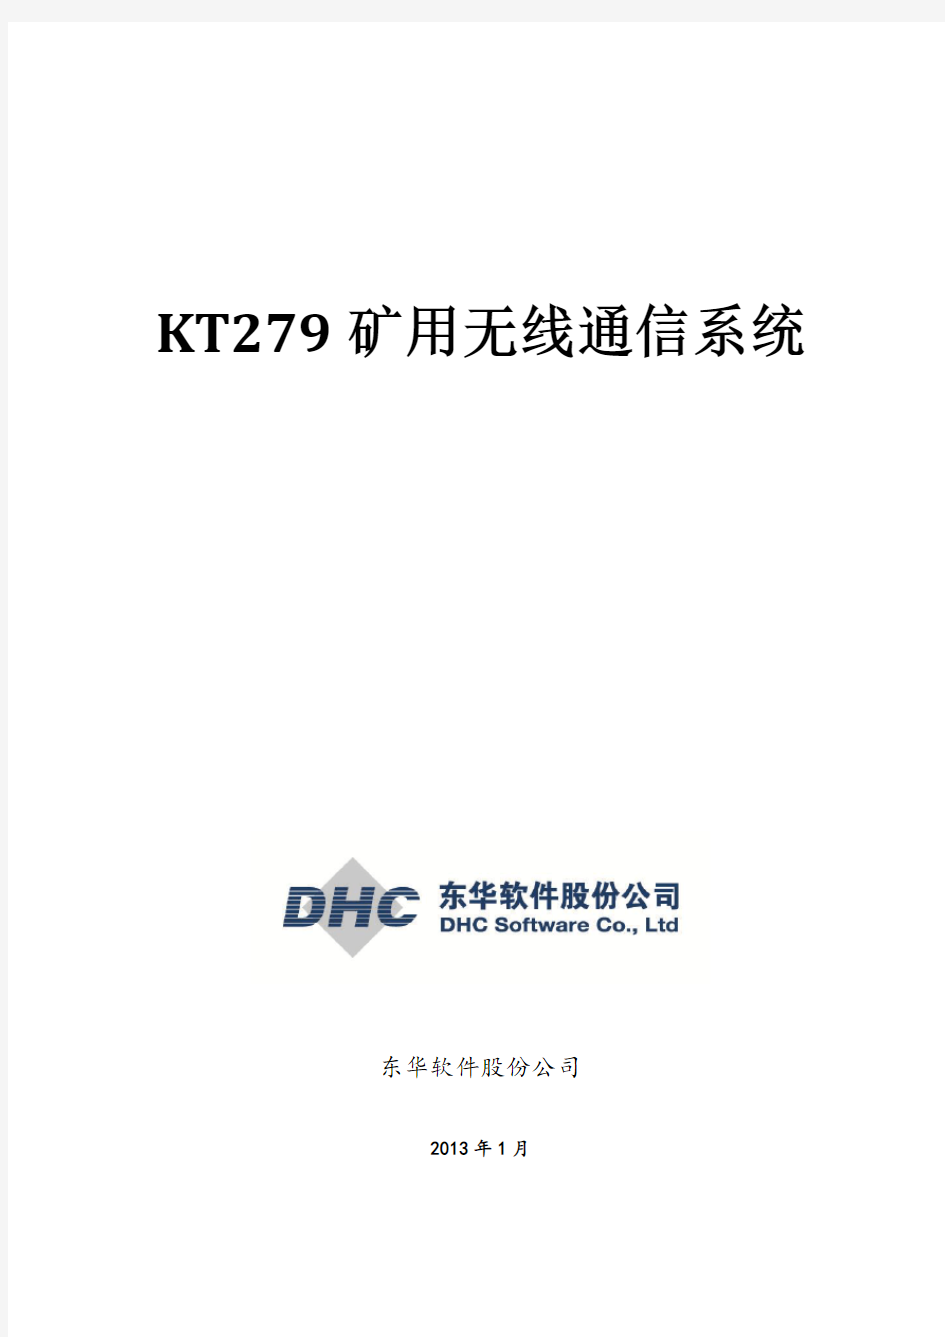 KT279矿用无线通信系统解决方案20130127